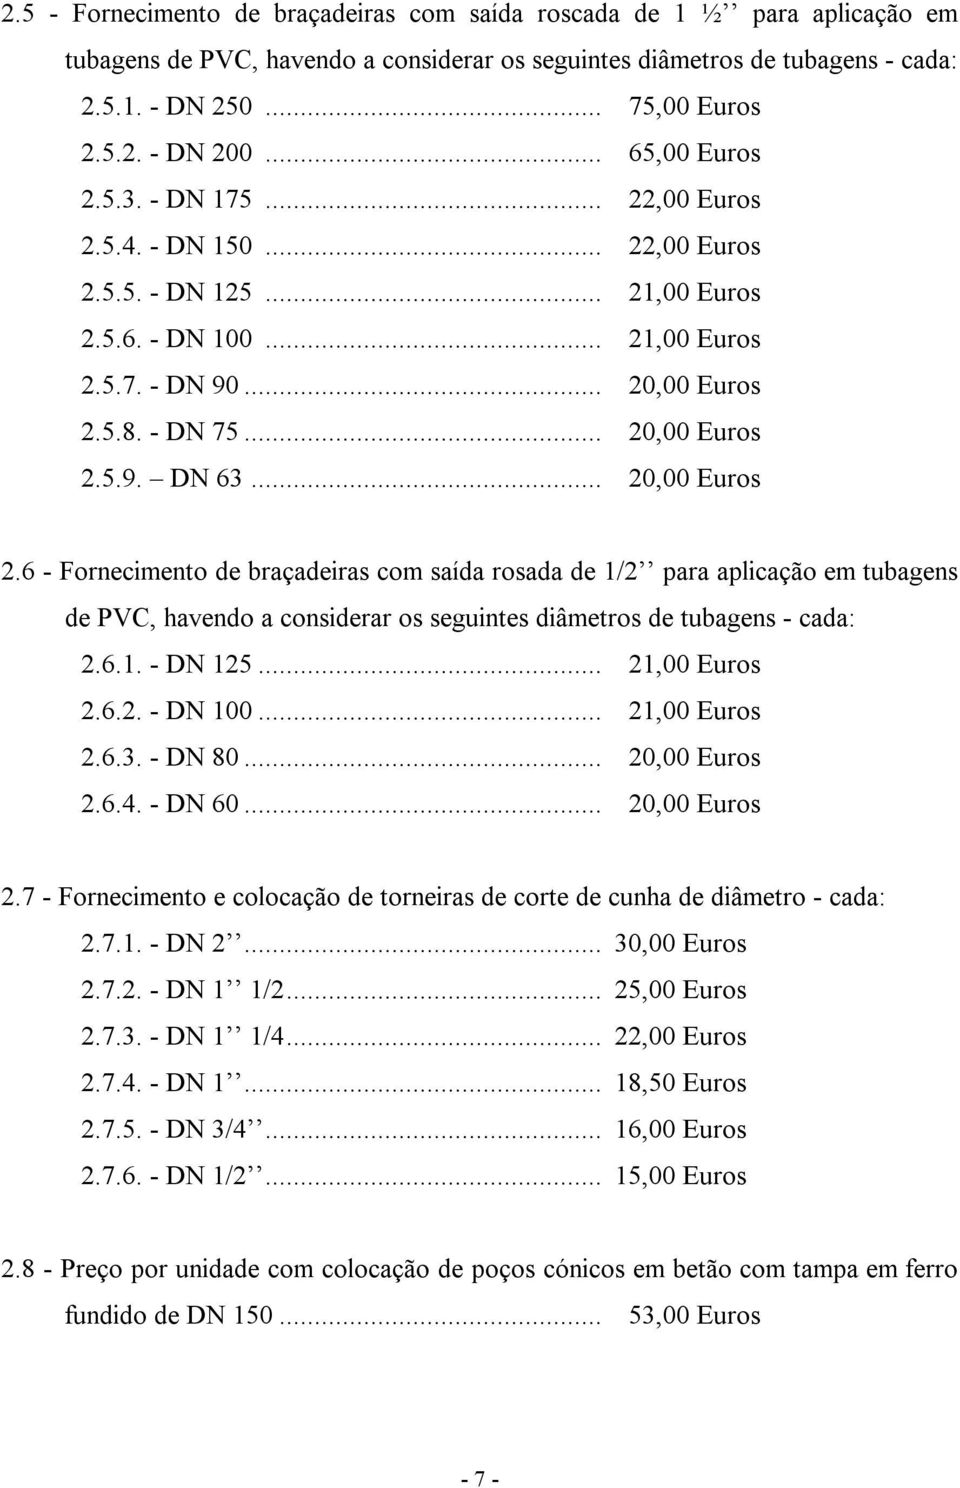 .. 20,00 Euros 2.6 - Fornecimento de braçadeiras com saída rosada de 1/2 para aplicação em tubagens de PVC, havendo a considerar os seguintes diâmetros de tubagens - cada: 2.6.1. - DN 125.